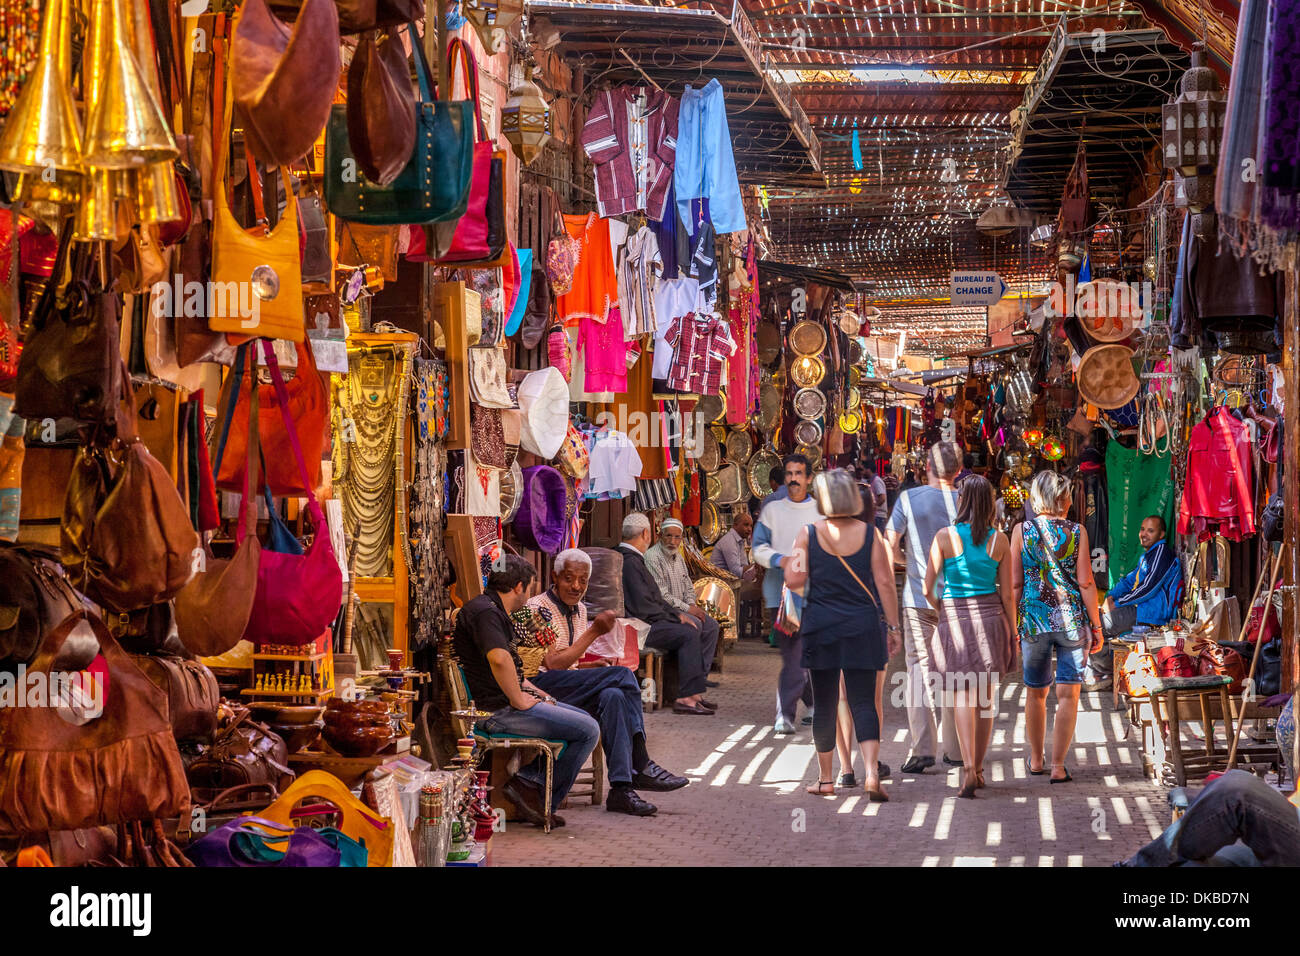 The Souk, Marrakech, Morocco Stock Photo